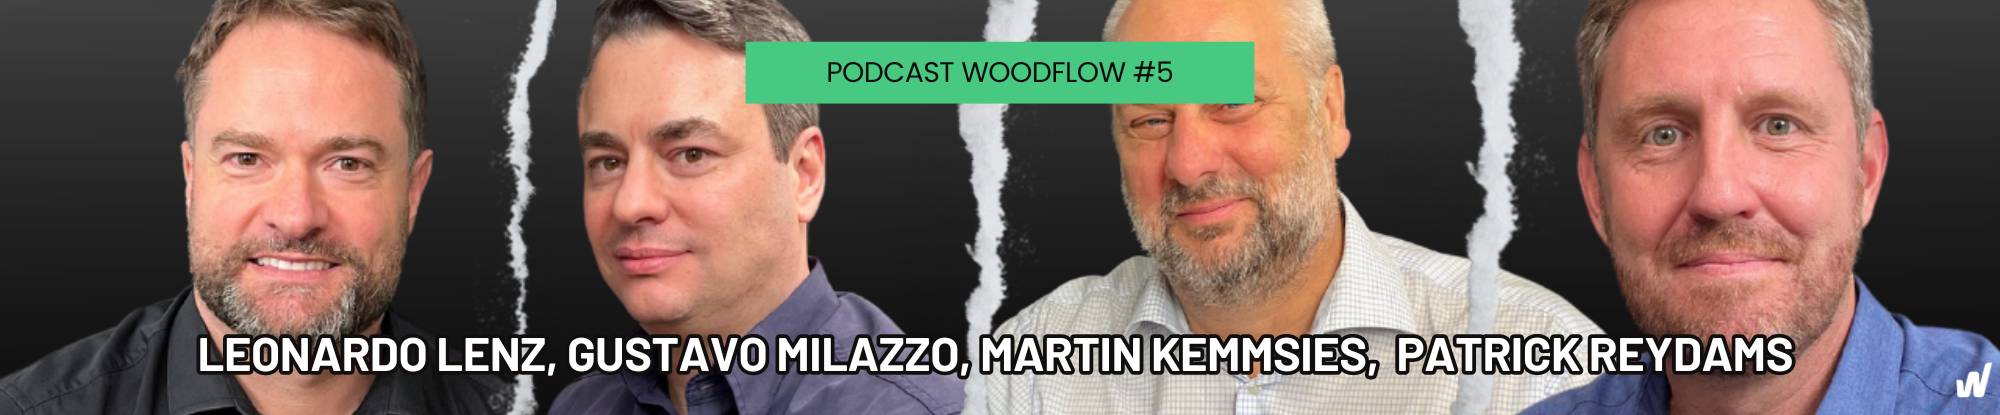 POR QUE TODOS ESTÃO FALANDO DE MADEIRA ENGENHEIRADA? - Podcast WoodFlow #5